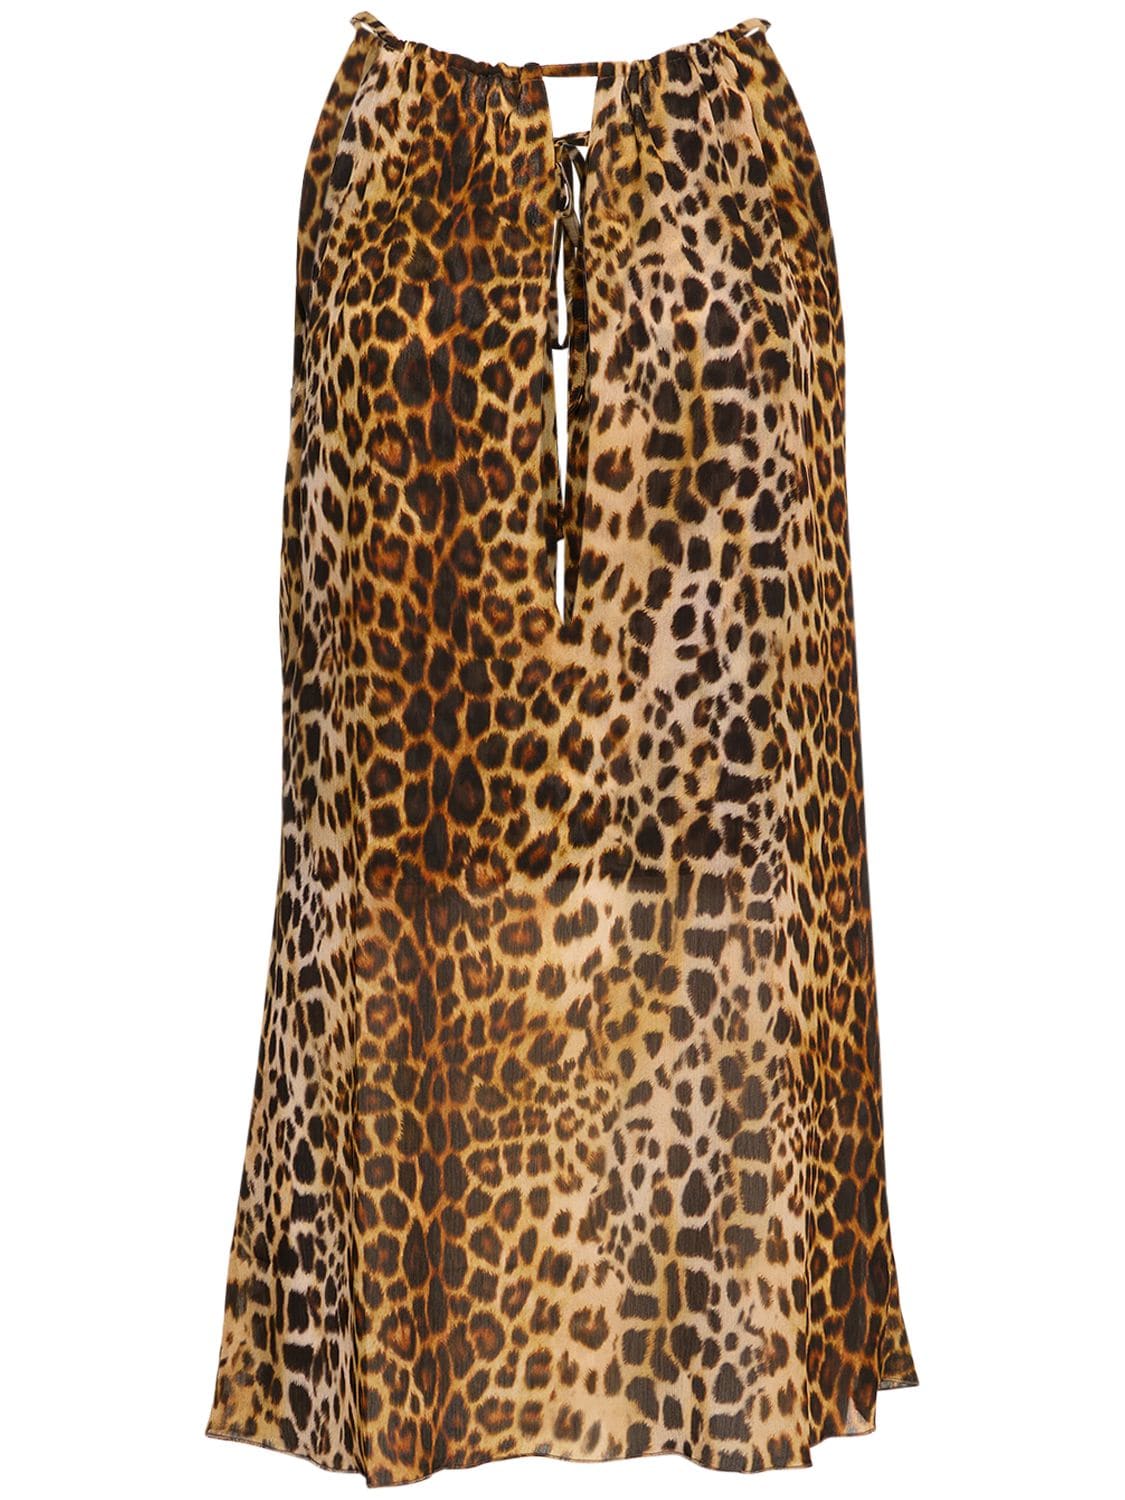 ALEX RIVIÈRE STUDIO Ziggy Leopard Print Mini Halter Dress